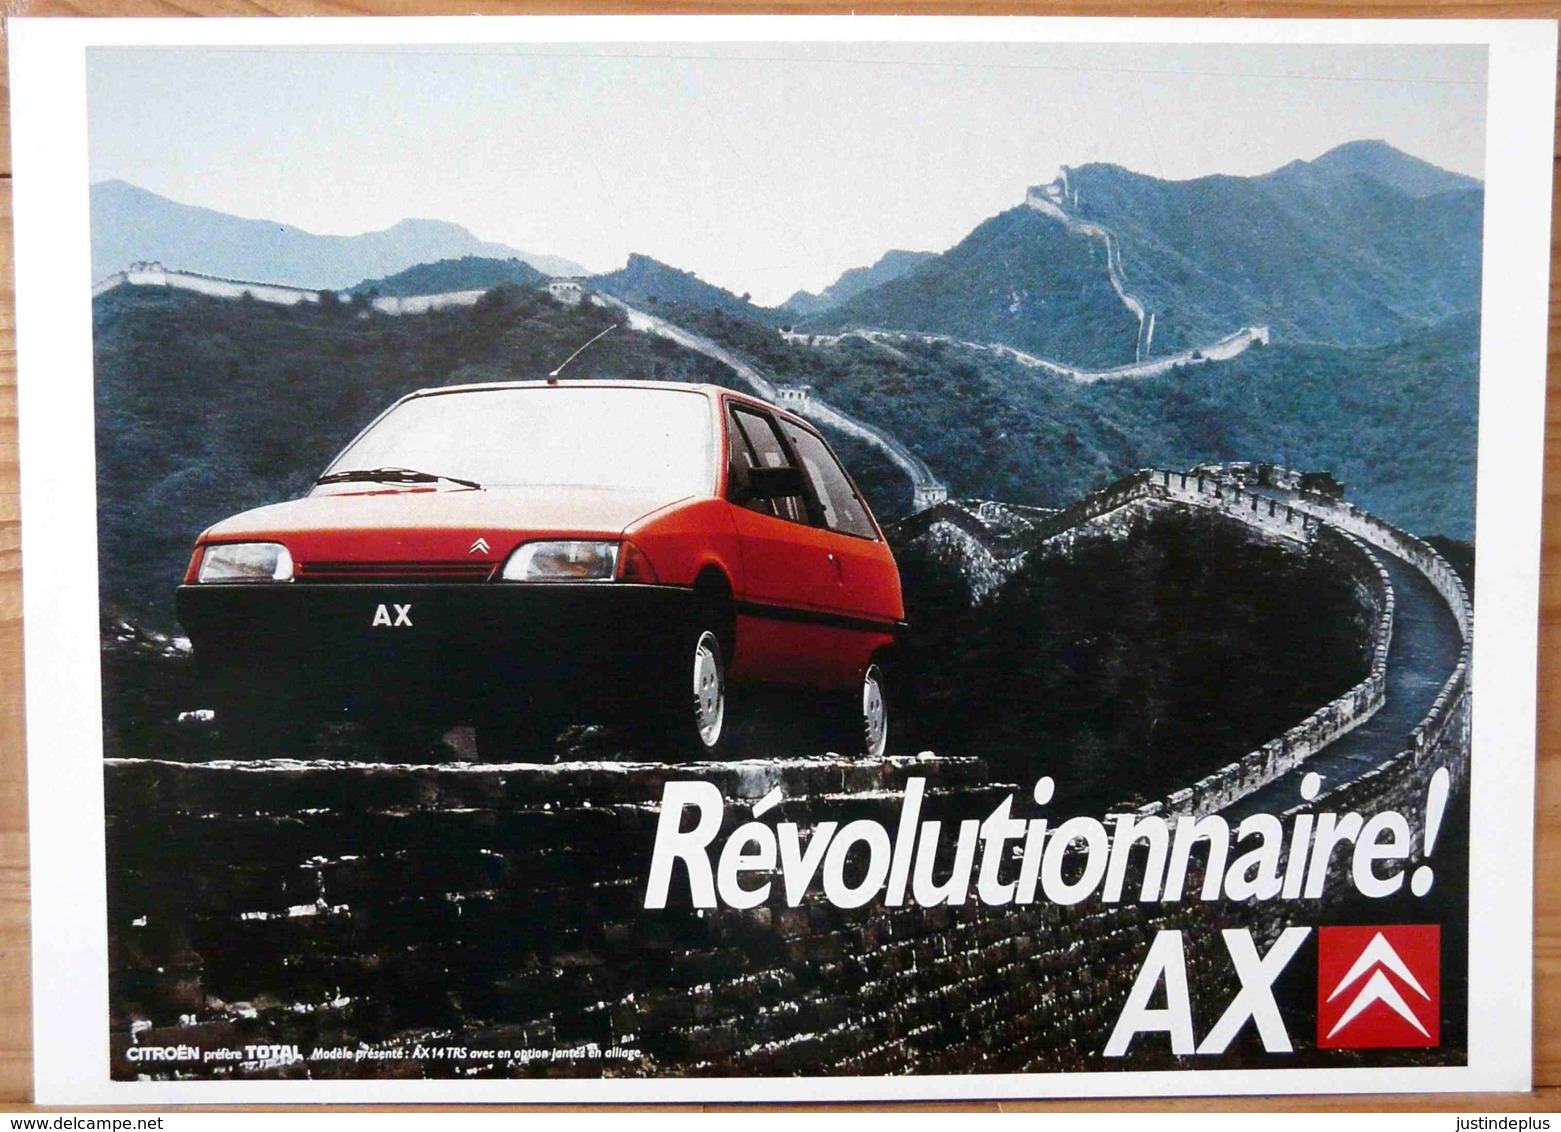 AFFICHE CITROEN REVOLUTIONNAIRE AX SUR LA MURAILLE DE CHINE - Automobiles